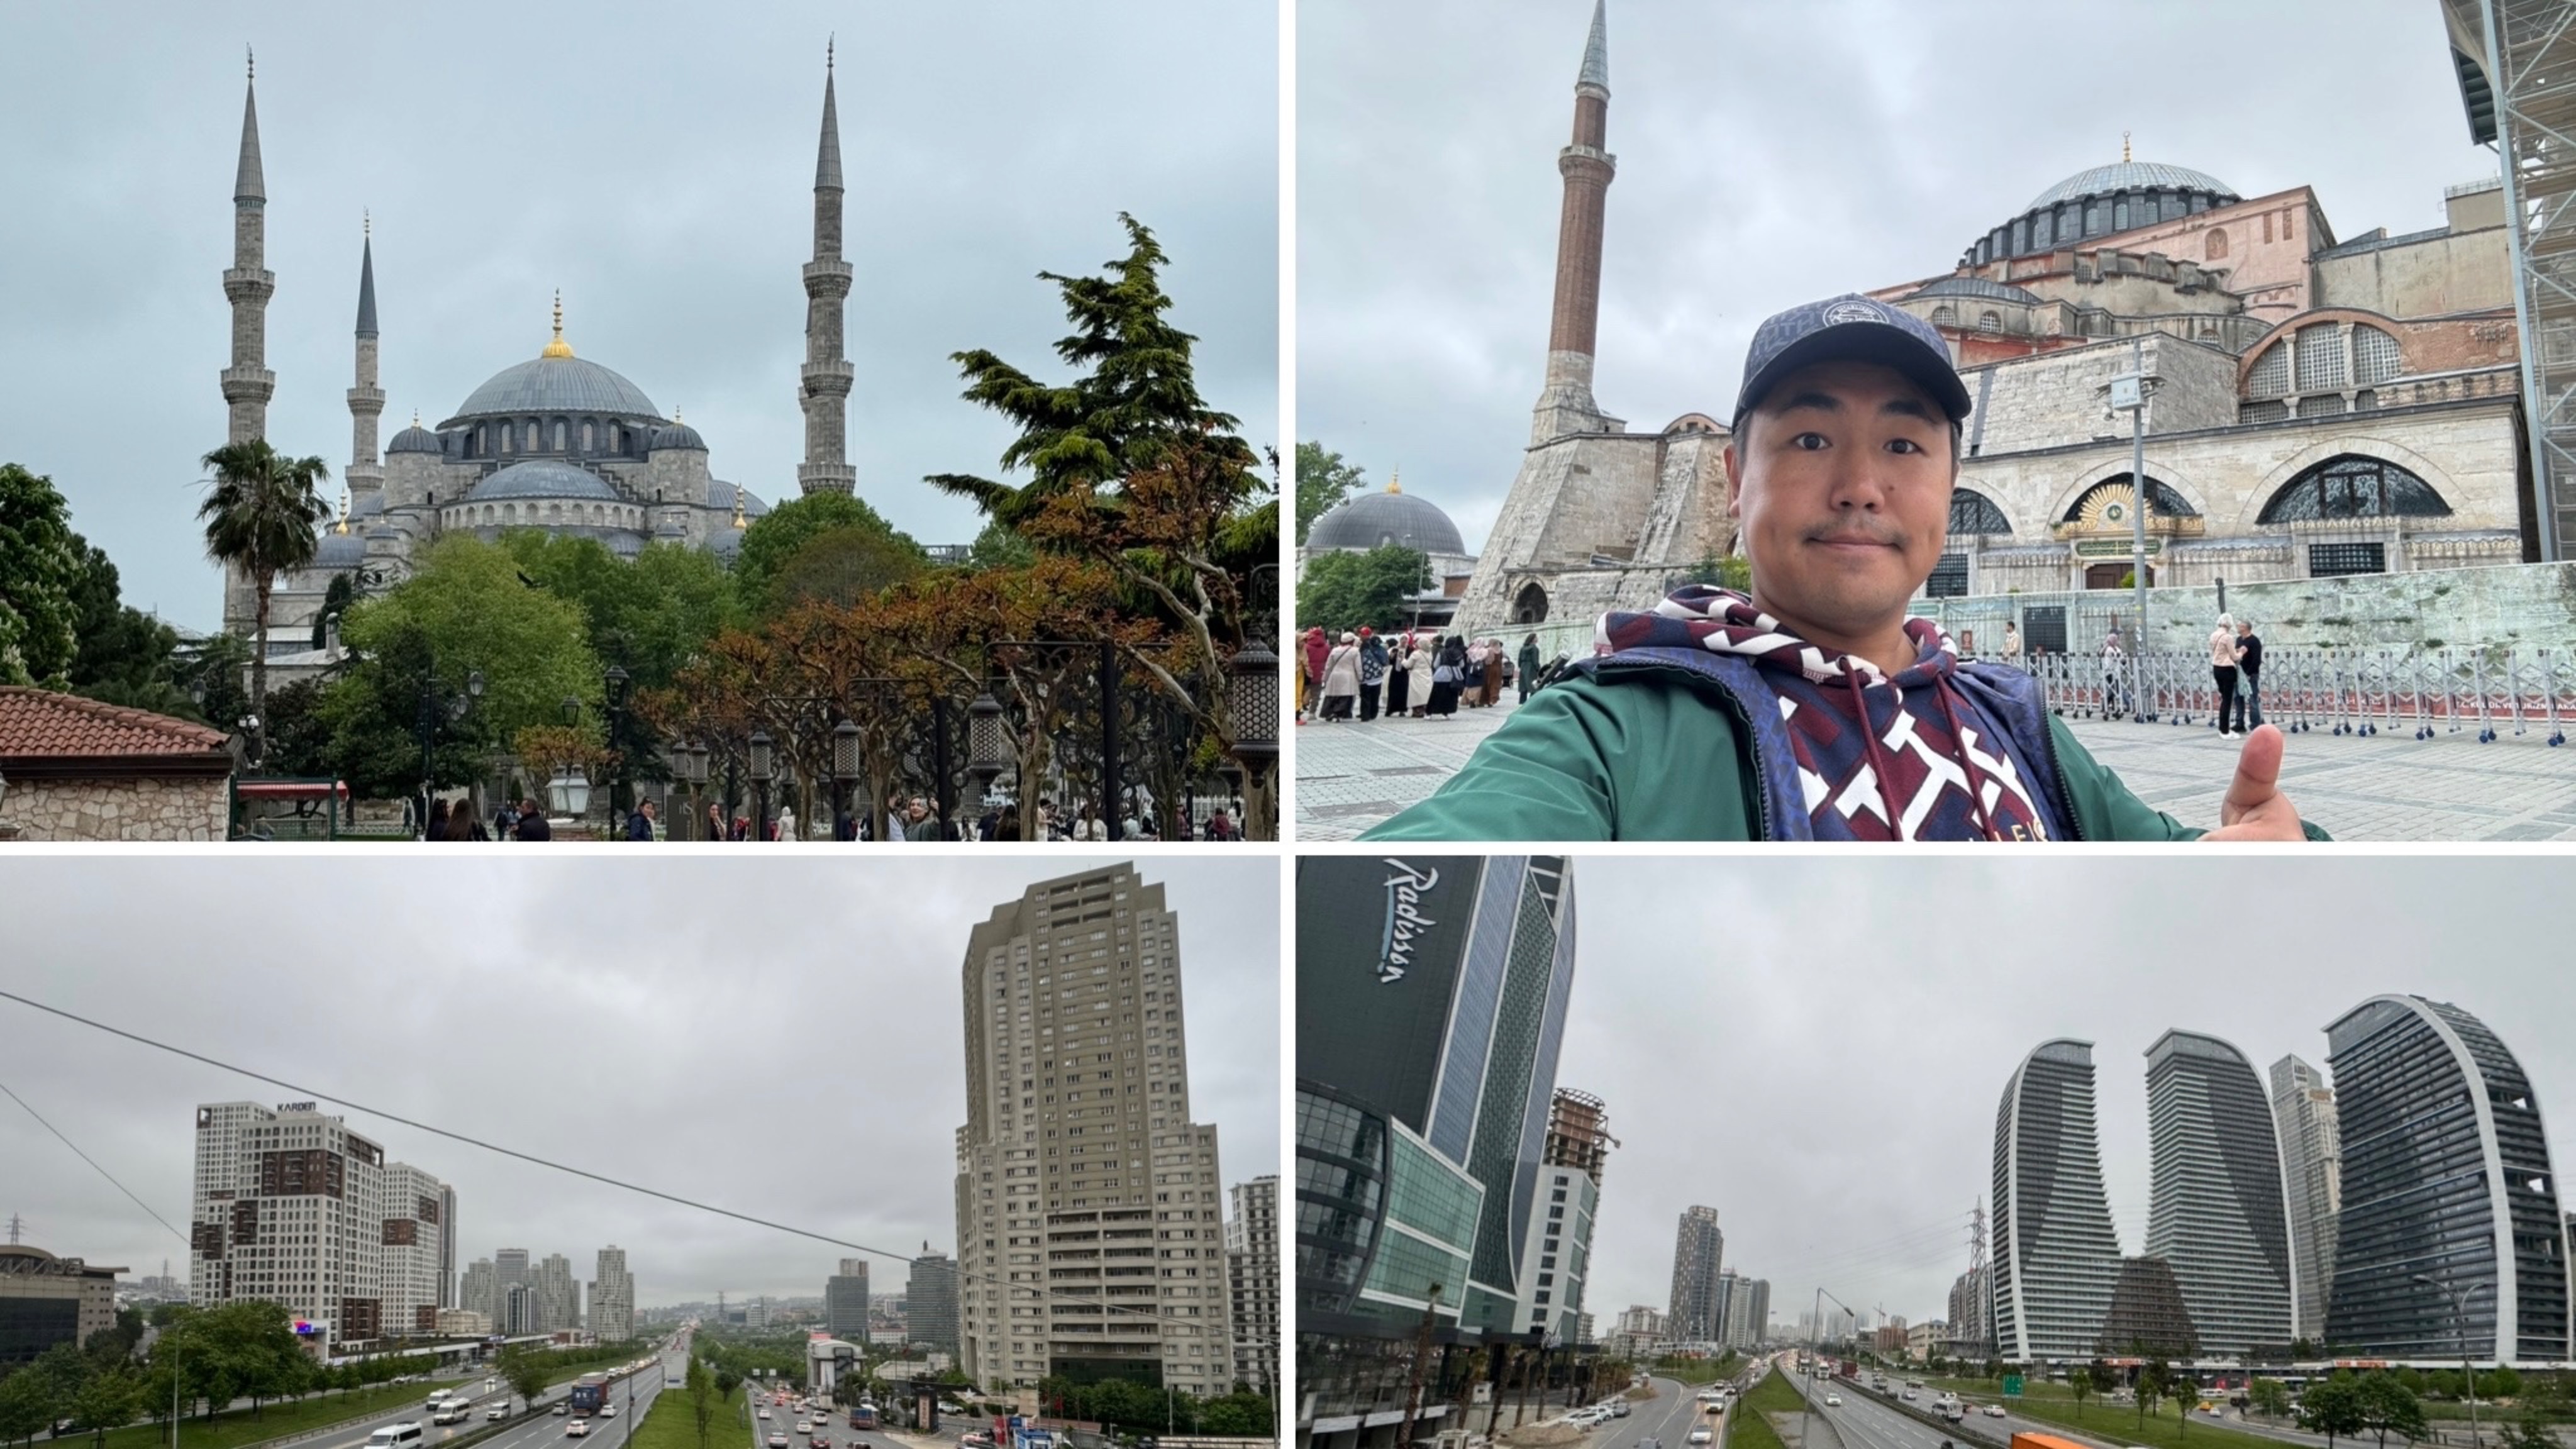 Стамбул-4: конвертирую $ для сделки, прогулка по Esenyurt, Султанахмет, Айя-София, Голубая мечеть